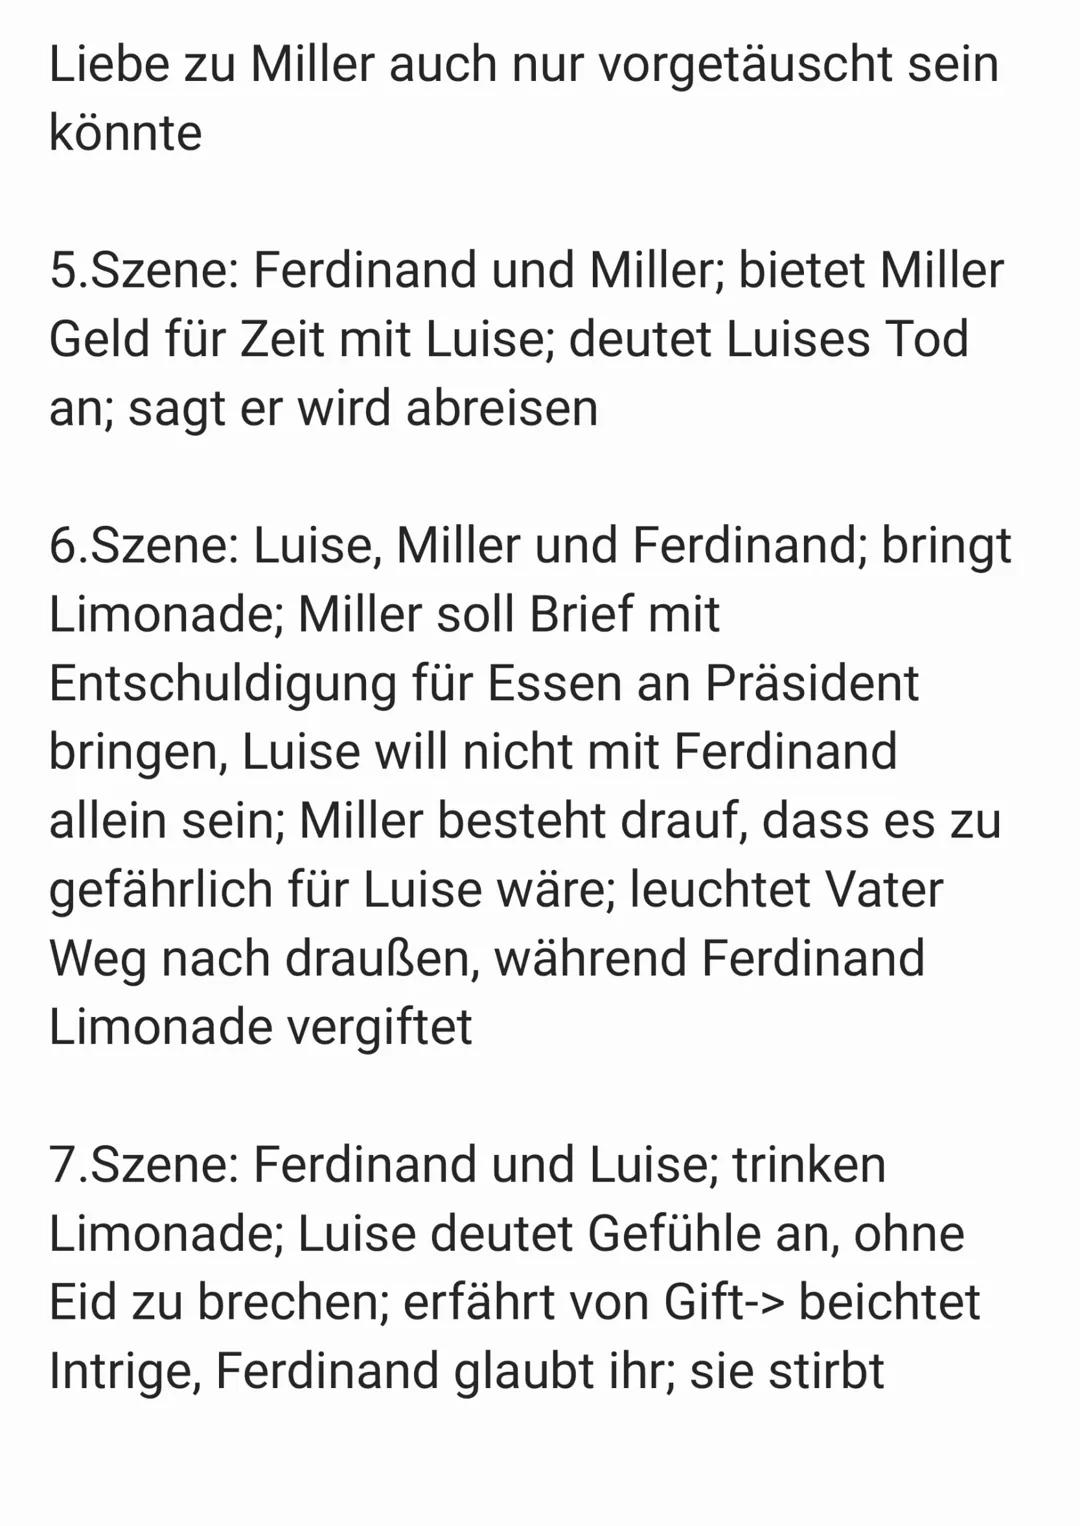 Kabale und Liebe
Akt 1:
1.Szene: Gespräch Miller und Millerin über
Beziehung von Luise und Ferdinand
2.Szene: Wurm will Luise heiraten-> bit